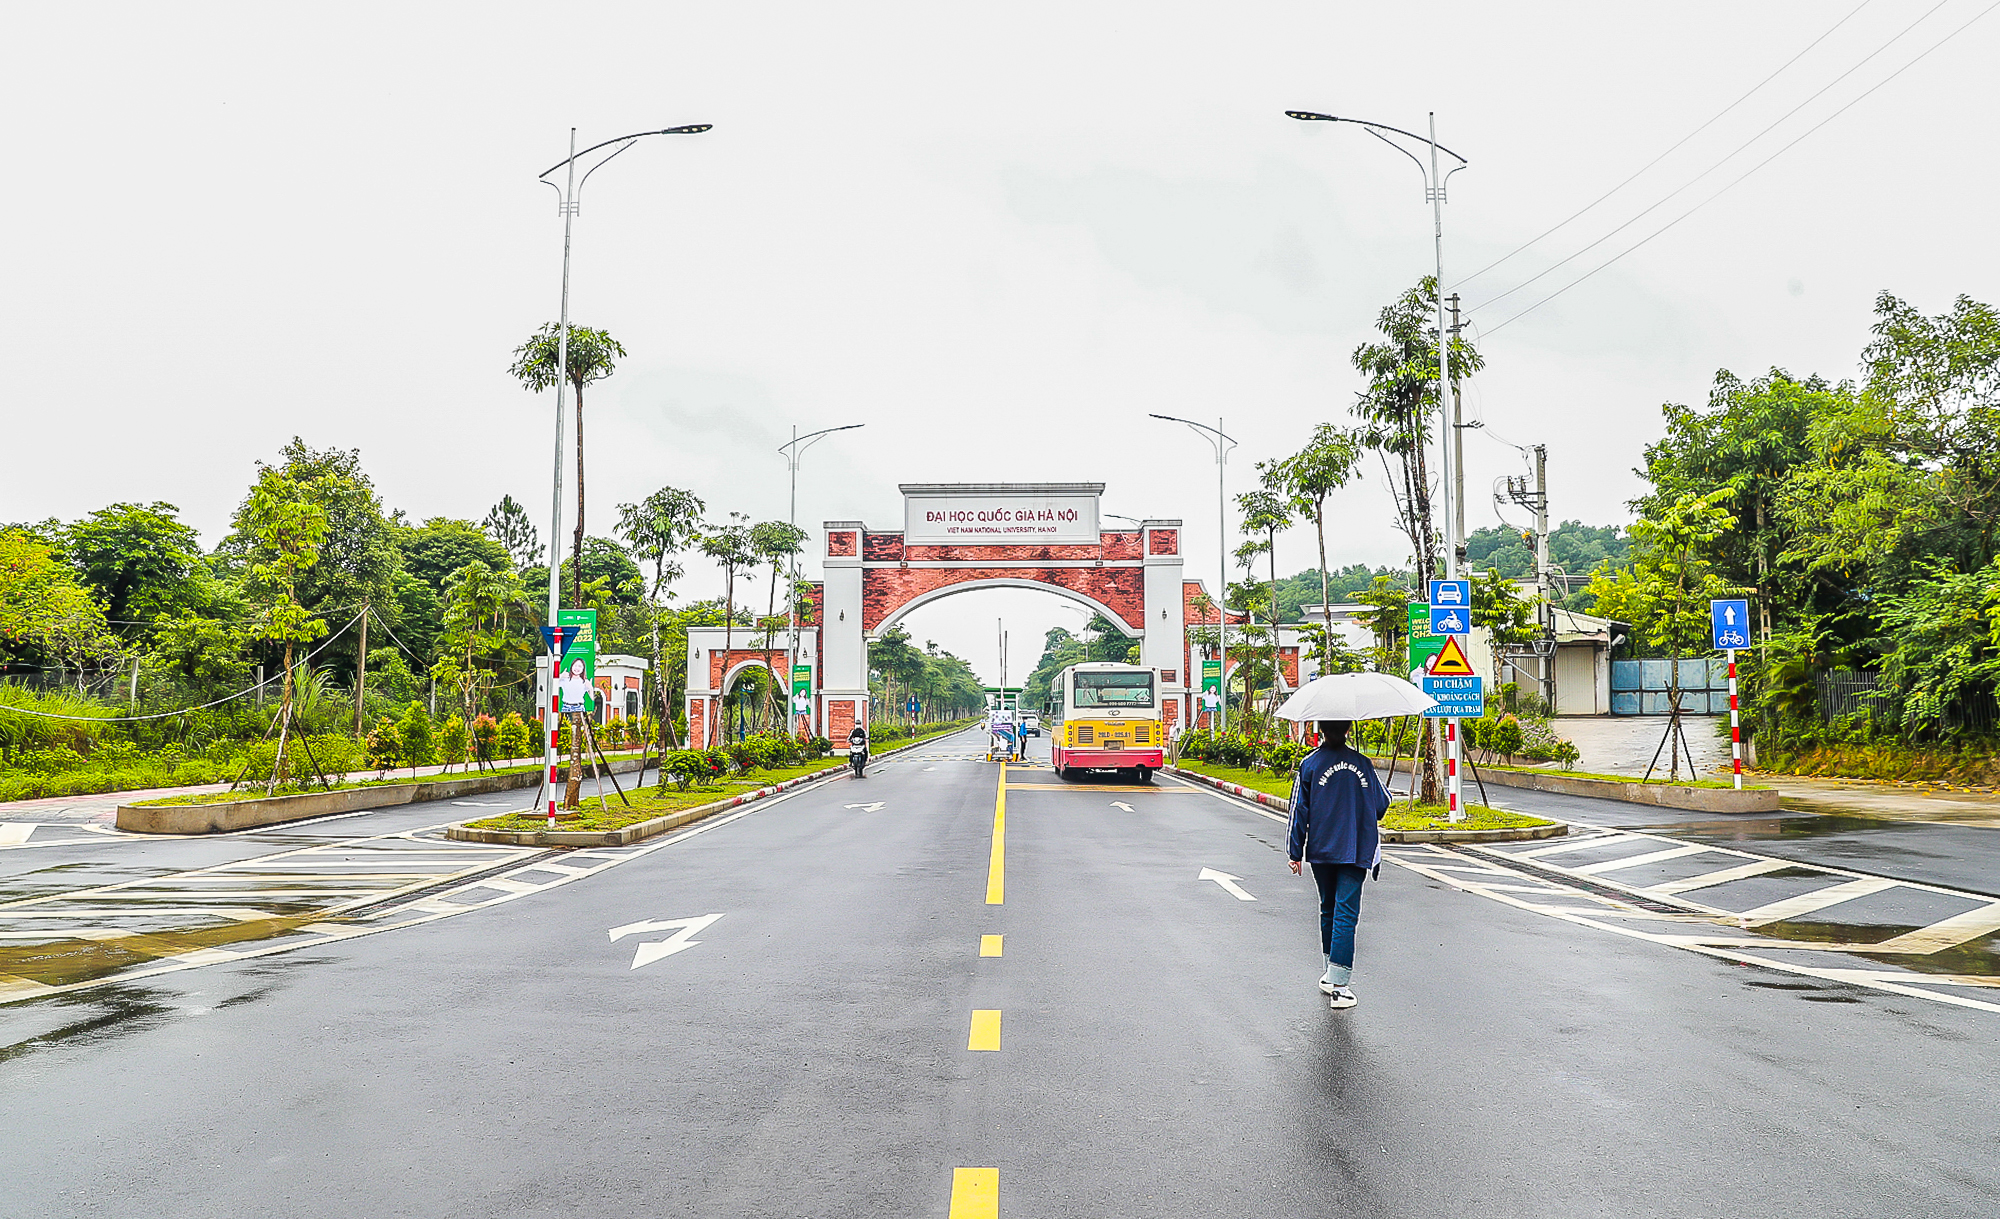 Đại học rộng nhất Việt Nam, diện tích gấp đôi quận Hoàn Kiếm  - Ảnh 1.